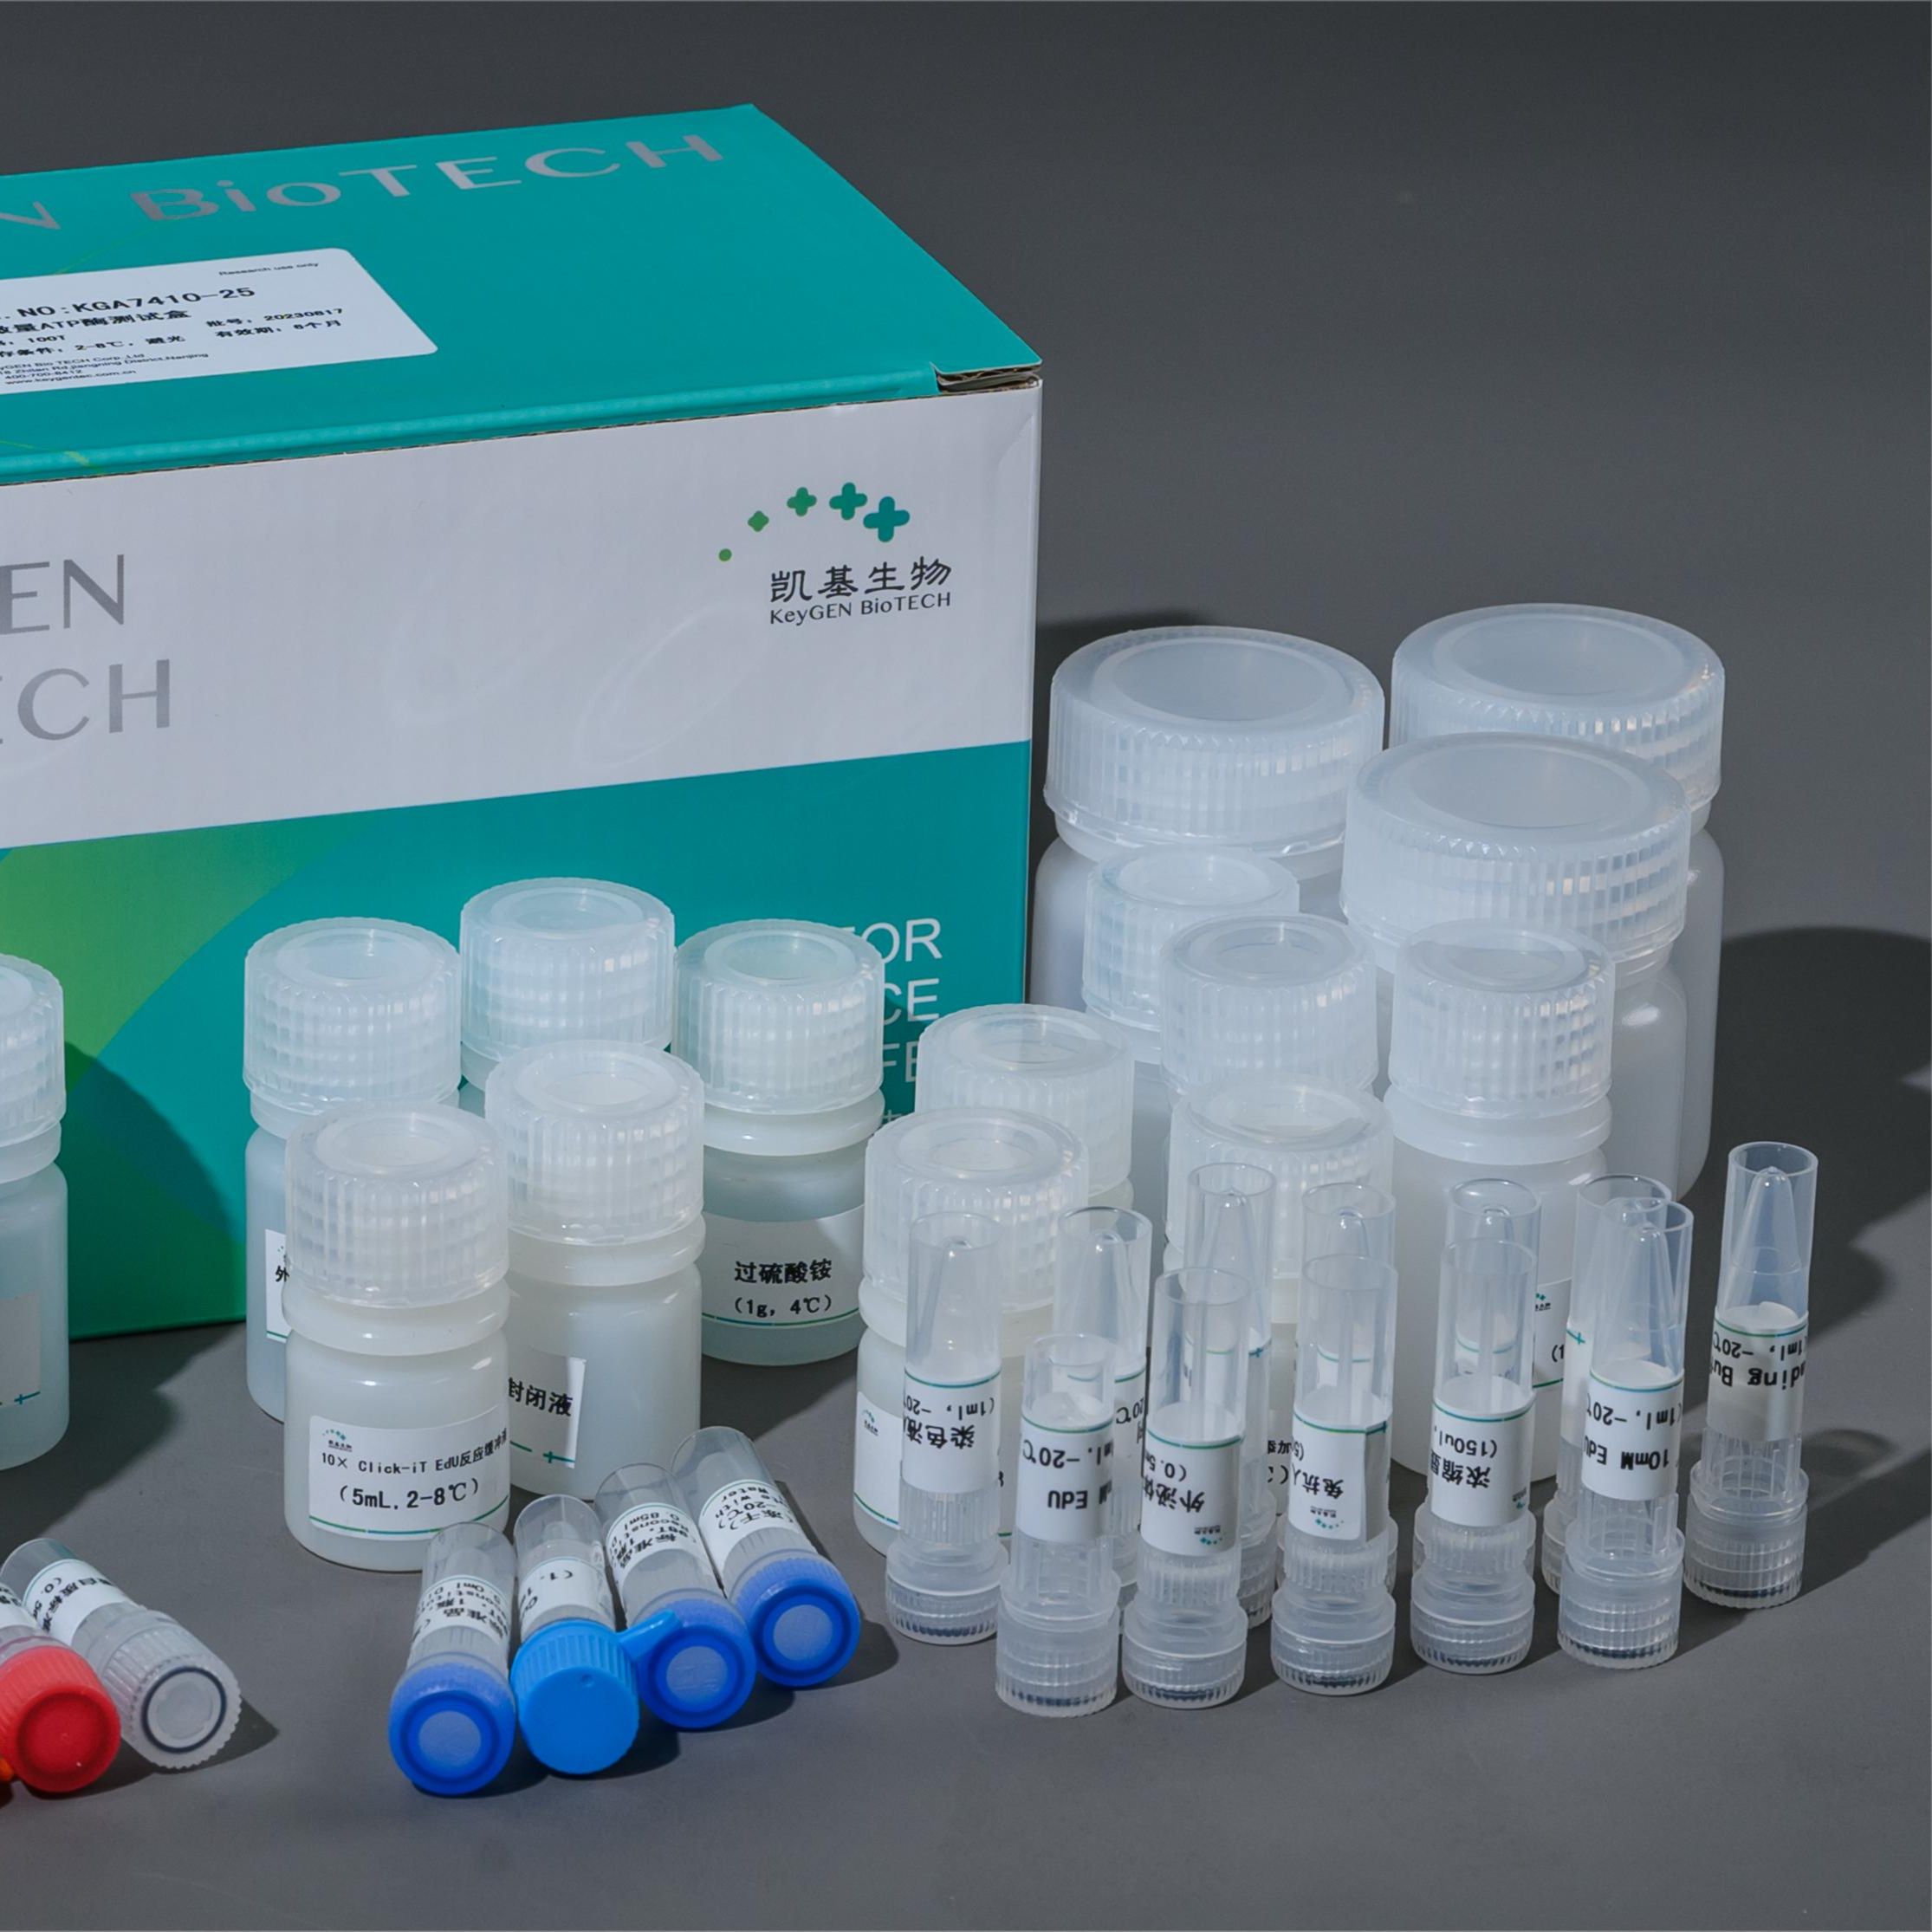 肌酸激酶（CK）测试盒